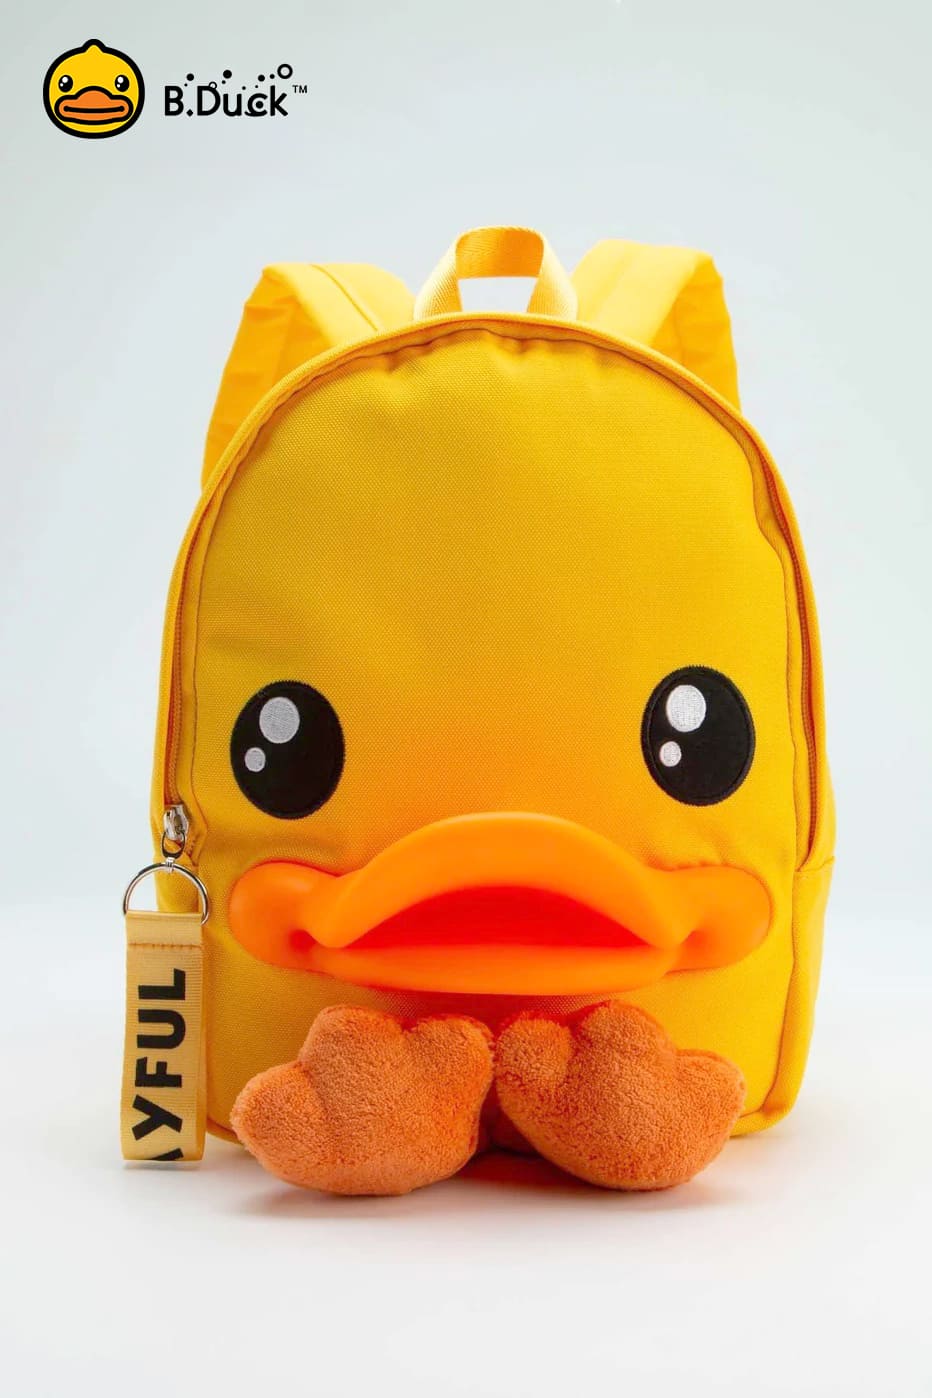 B.Duck Small Backpack Yellow 3D Duckbill Shape For Kids Zipper